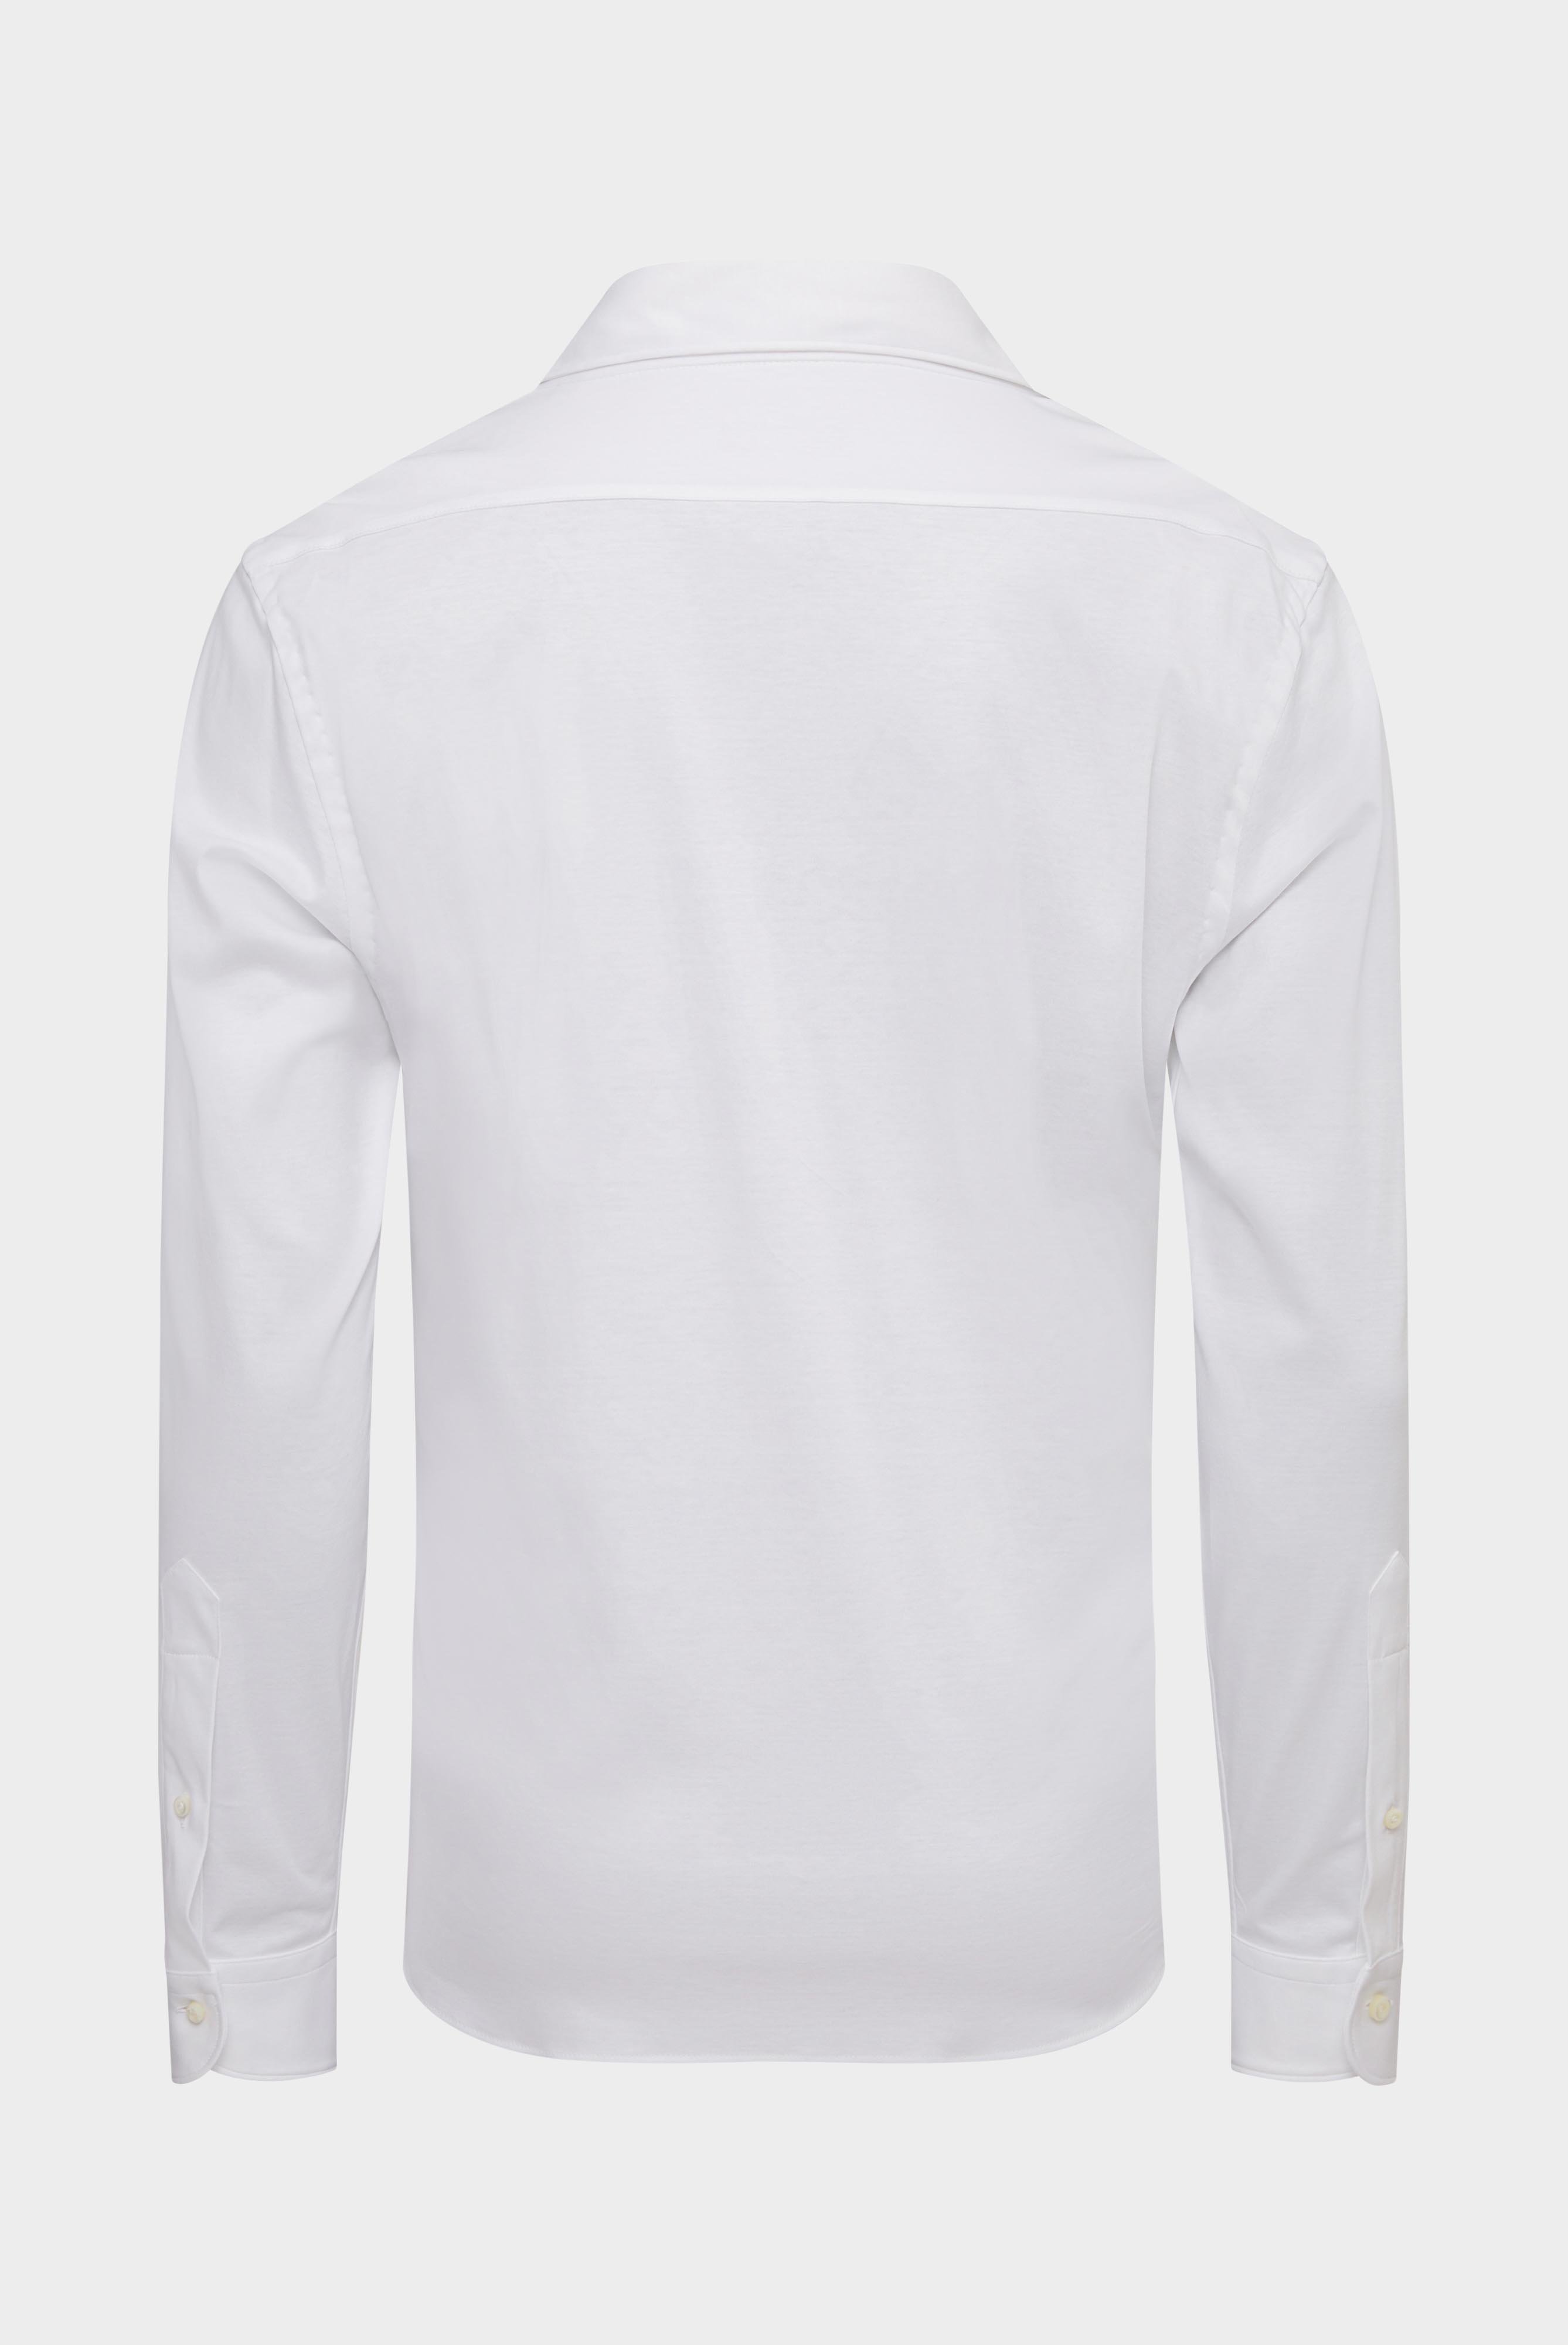 Bügelleichte Hemden+Jersey Hemd mit glänzender Optik Tailor Fit+20.1683.UC.180031.000.XXL